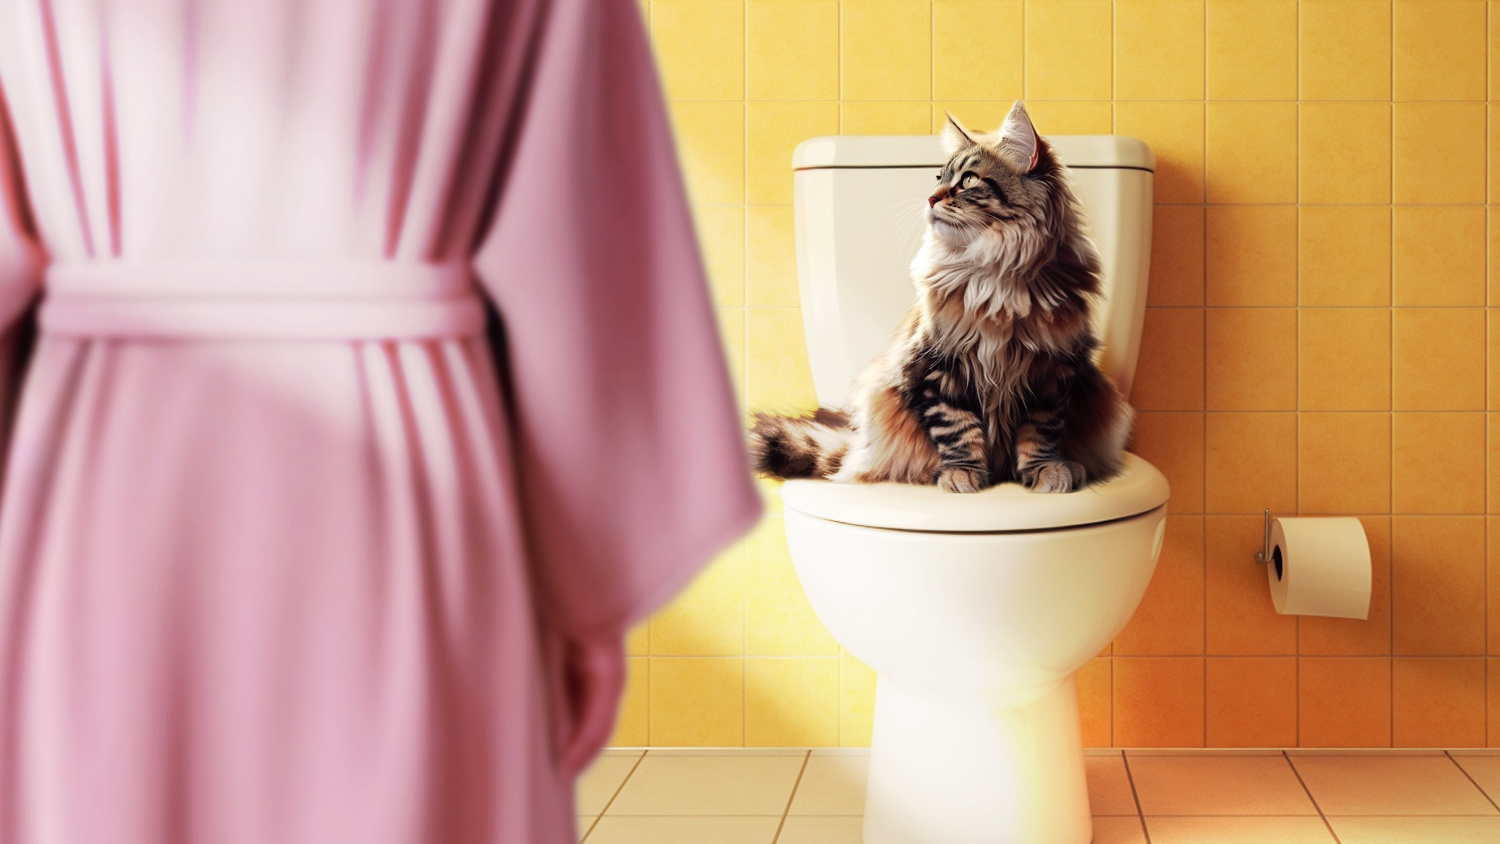 Можно ли смывать туалетную бумагу, а кошачий наполнитель? Сантехник развеял мифы про унитазы